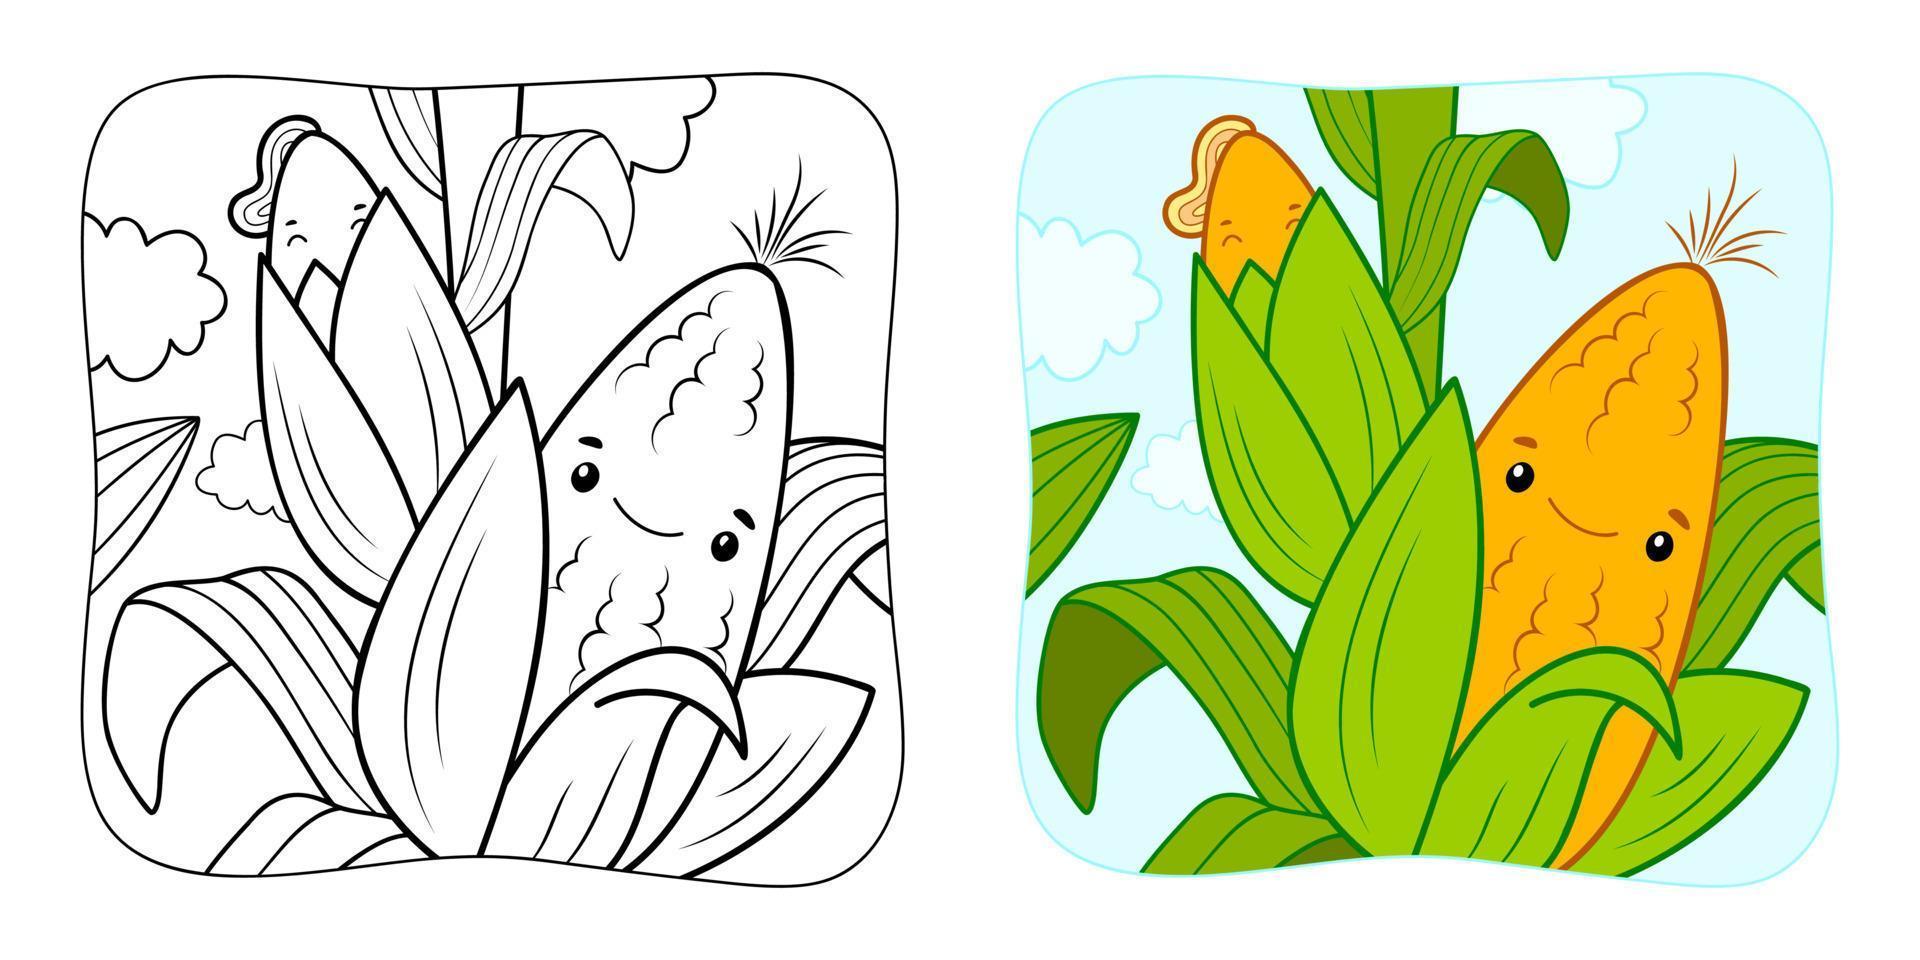 kleurboek of kleurplaat voor kinderen. maïs vector illustratie clipart. natuur achtergrond.